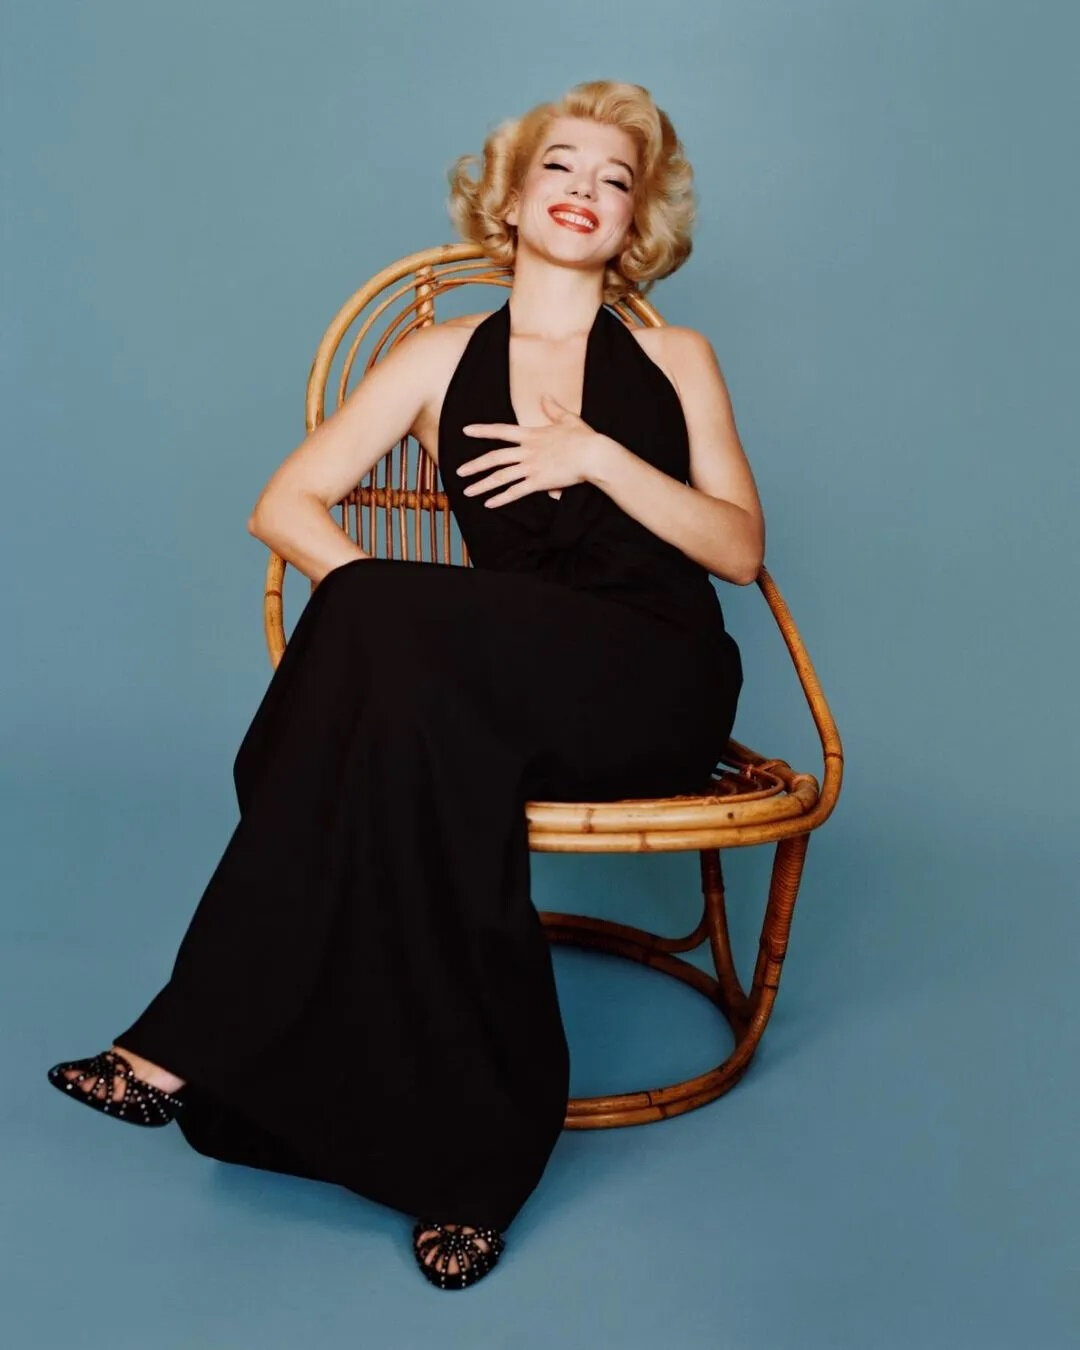 03/2021 - Léa Seydoux pour Vuitton - Divine Marilyn Monroe